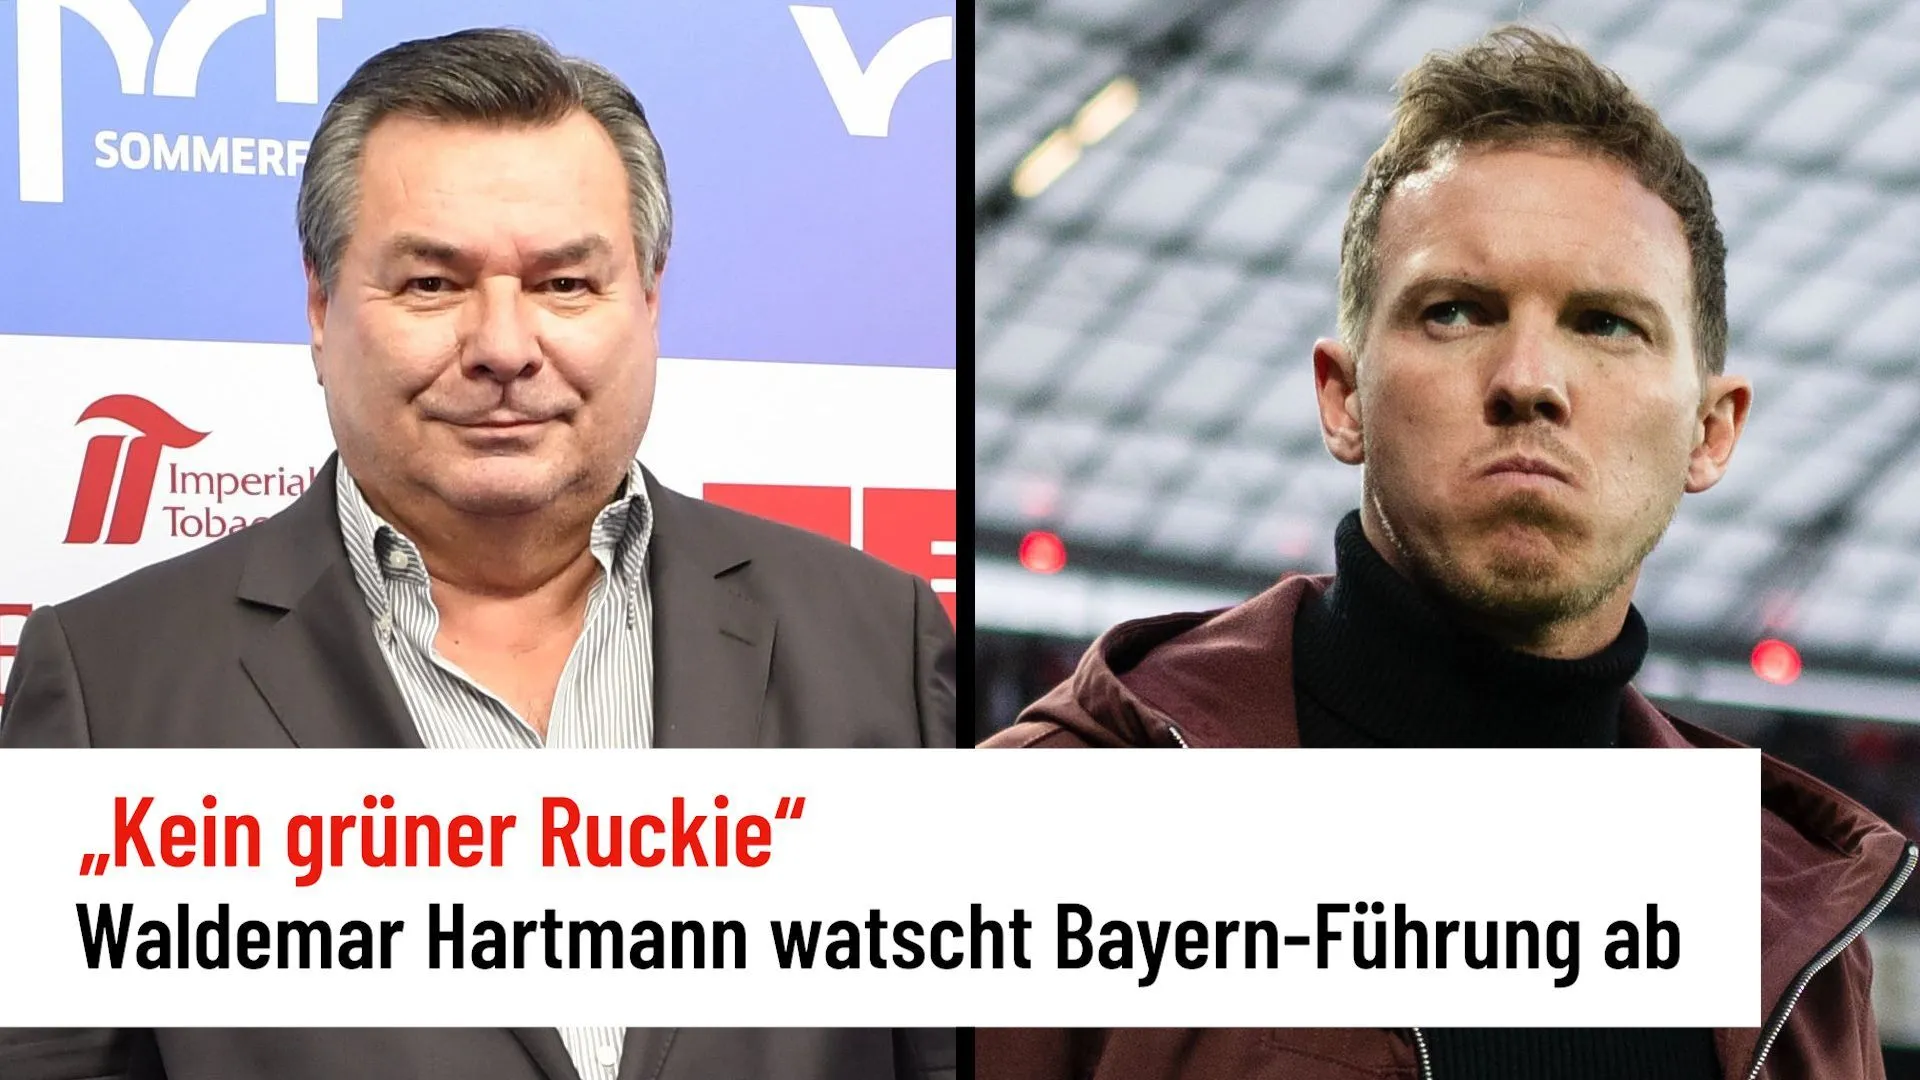 Waldemar Hartmann übt scharfe Kritik an der Vereinsführung des FC Bayern München - Nagelsmann 